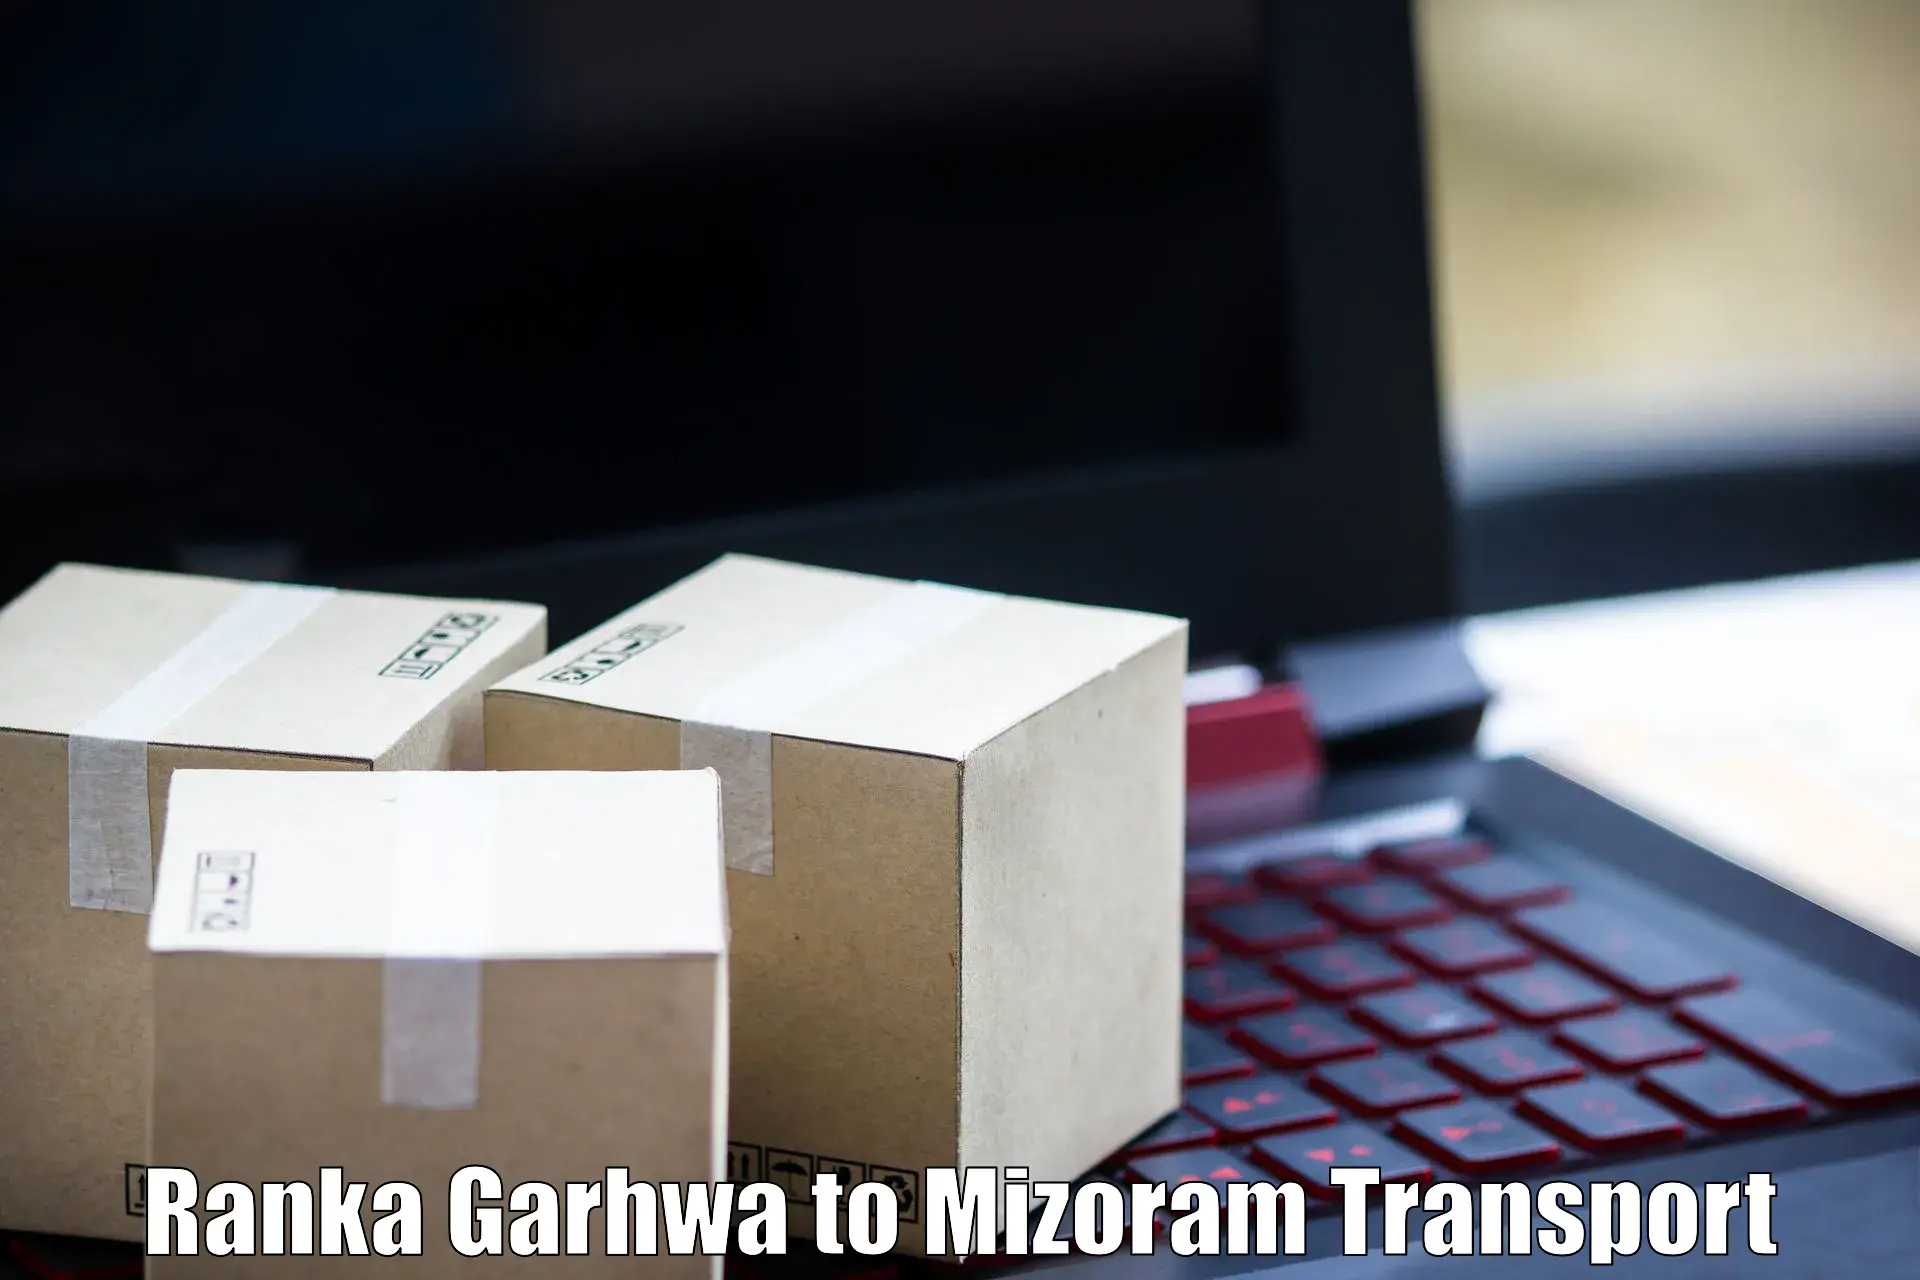 Online transport service Ranka Garhwa to Darlawn